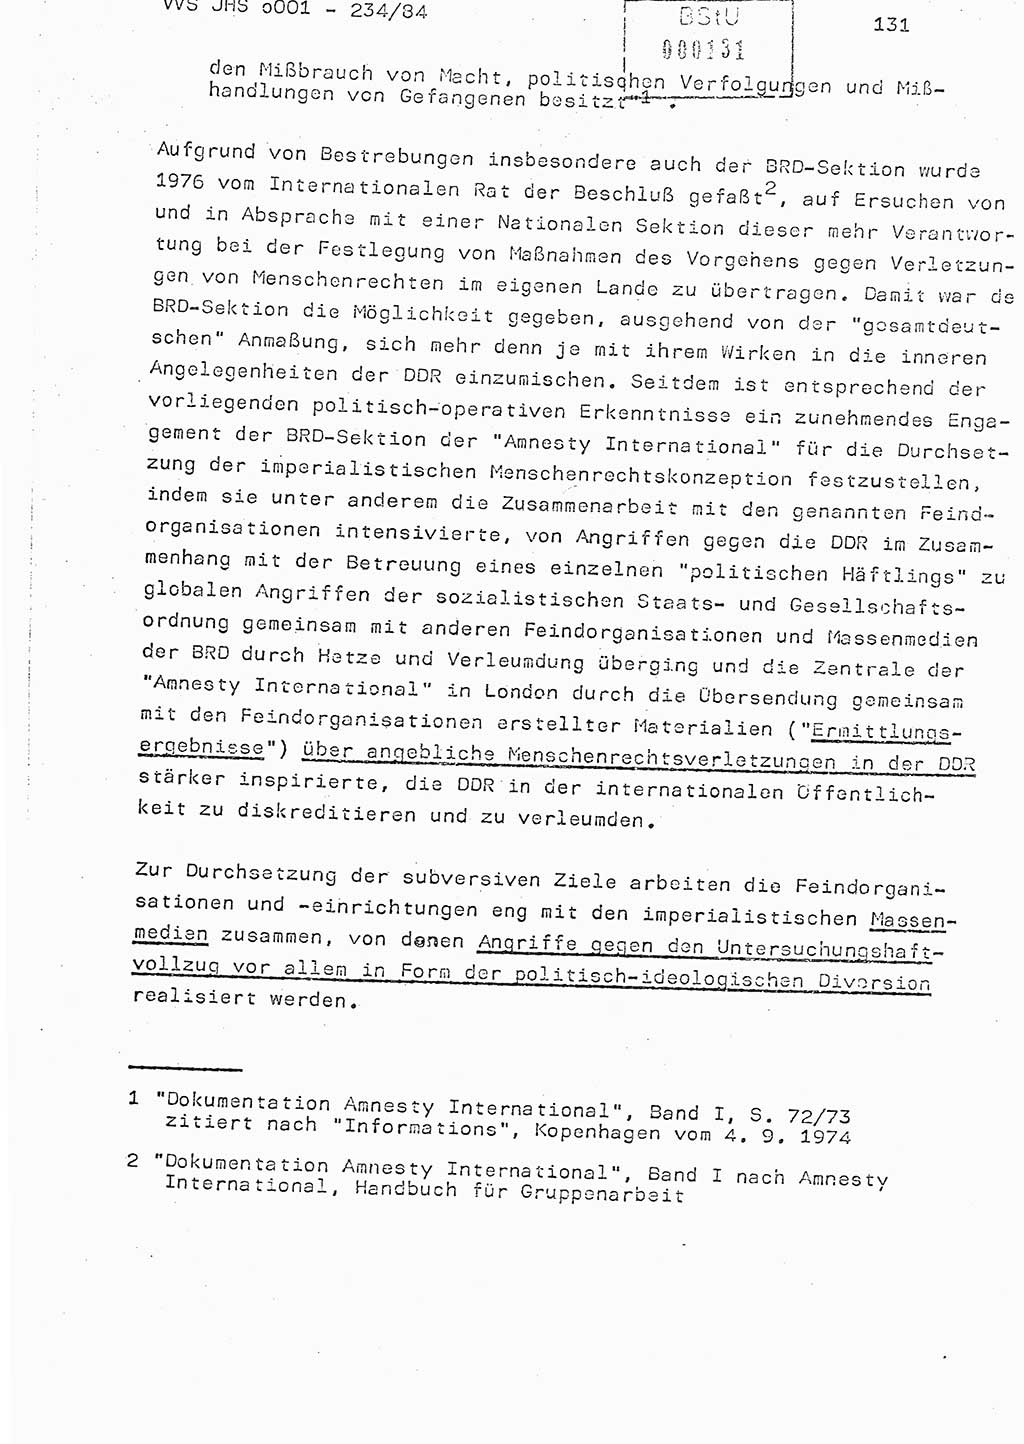 Dissertation Oberst Siegfried Rataizick (Abt. ⅩⅣ), Oberstleutnant Volkmar Heinz (Abt. ⅩⅣ), Oberstleutnant Werner Stein (HA Ⅸ), Hauptmann Heinz Conrad (JHS), Ministerium für Staatssicherheit (MfS) [Deutsche Demokratische Republik (DDR)], Juristische Hochschule (JHS), Vertrauliche Verschlußsache (VVS) o001-234/84, Potsdam 1984, Seite 131 (Diss. MfS DDR JHS VVS o001-234/84 1984, S. 131)